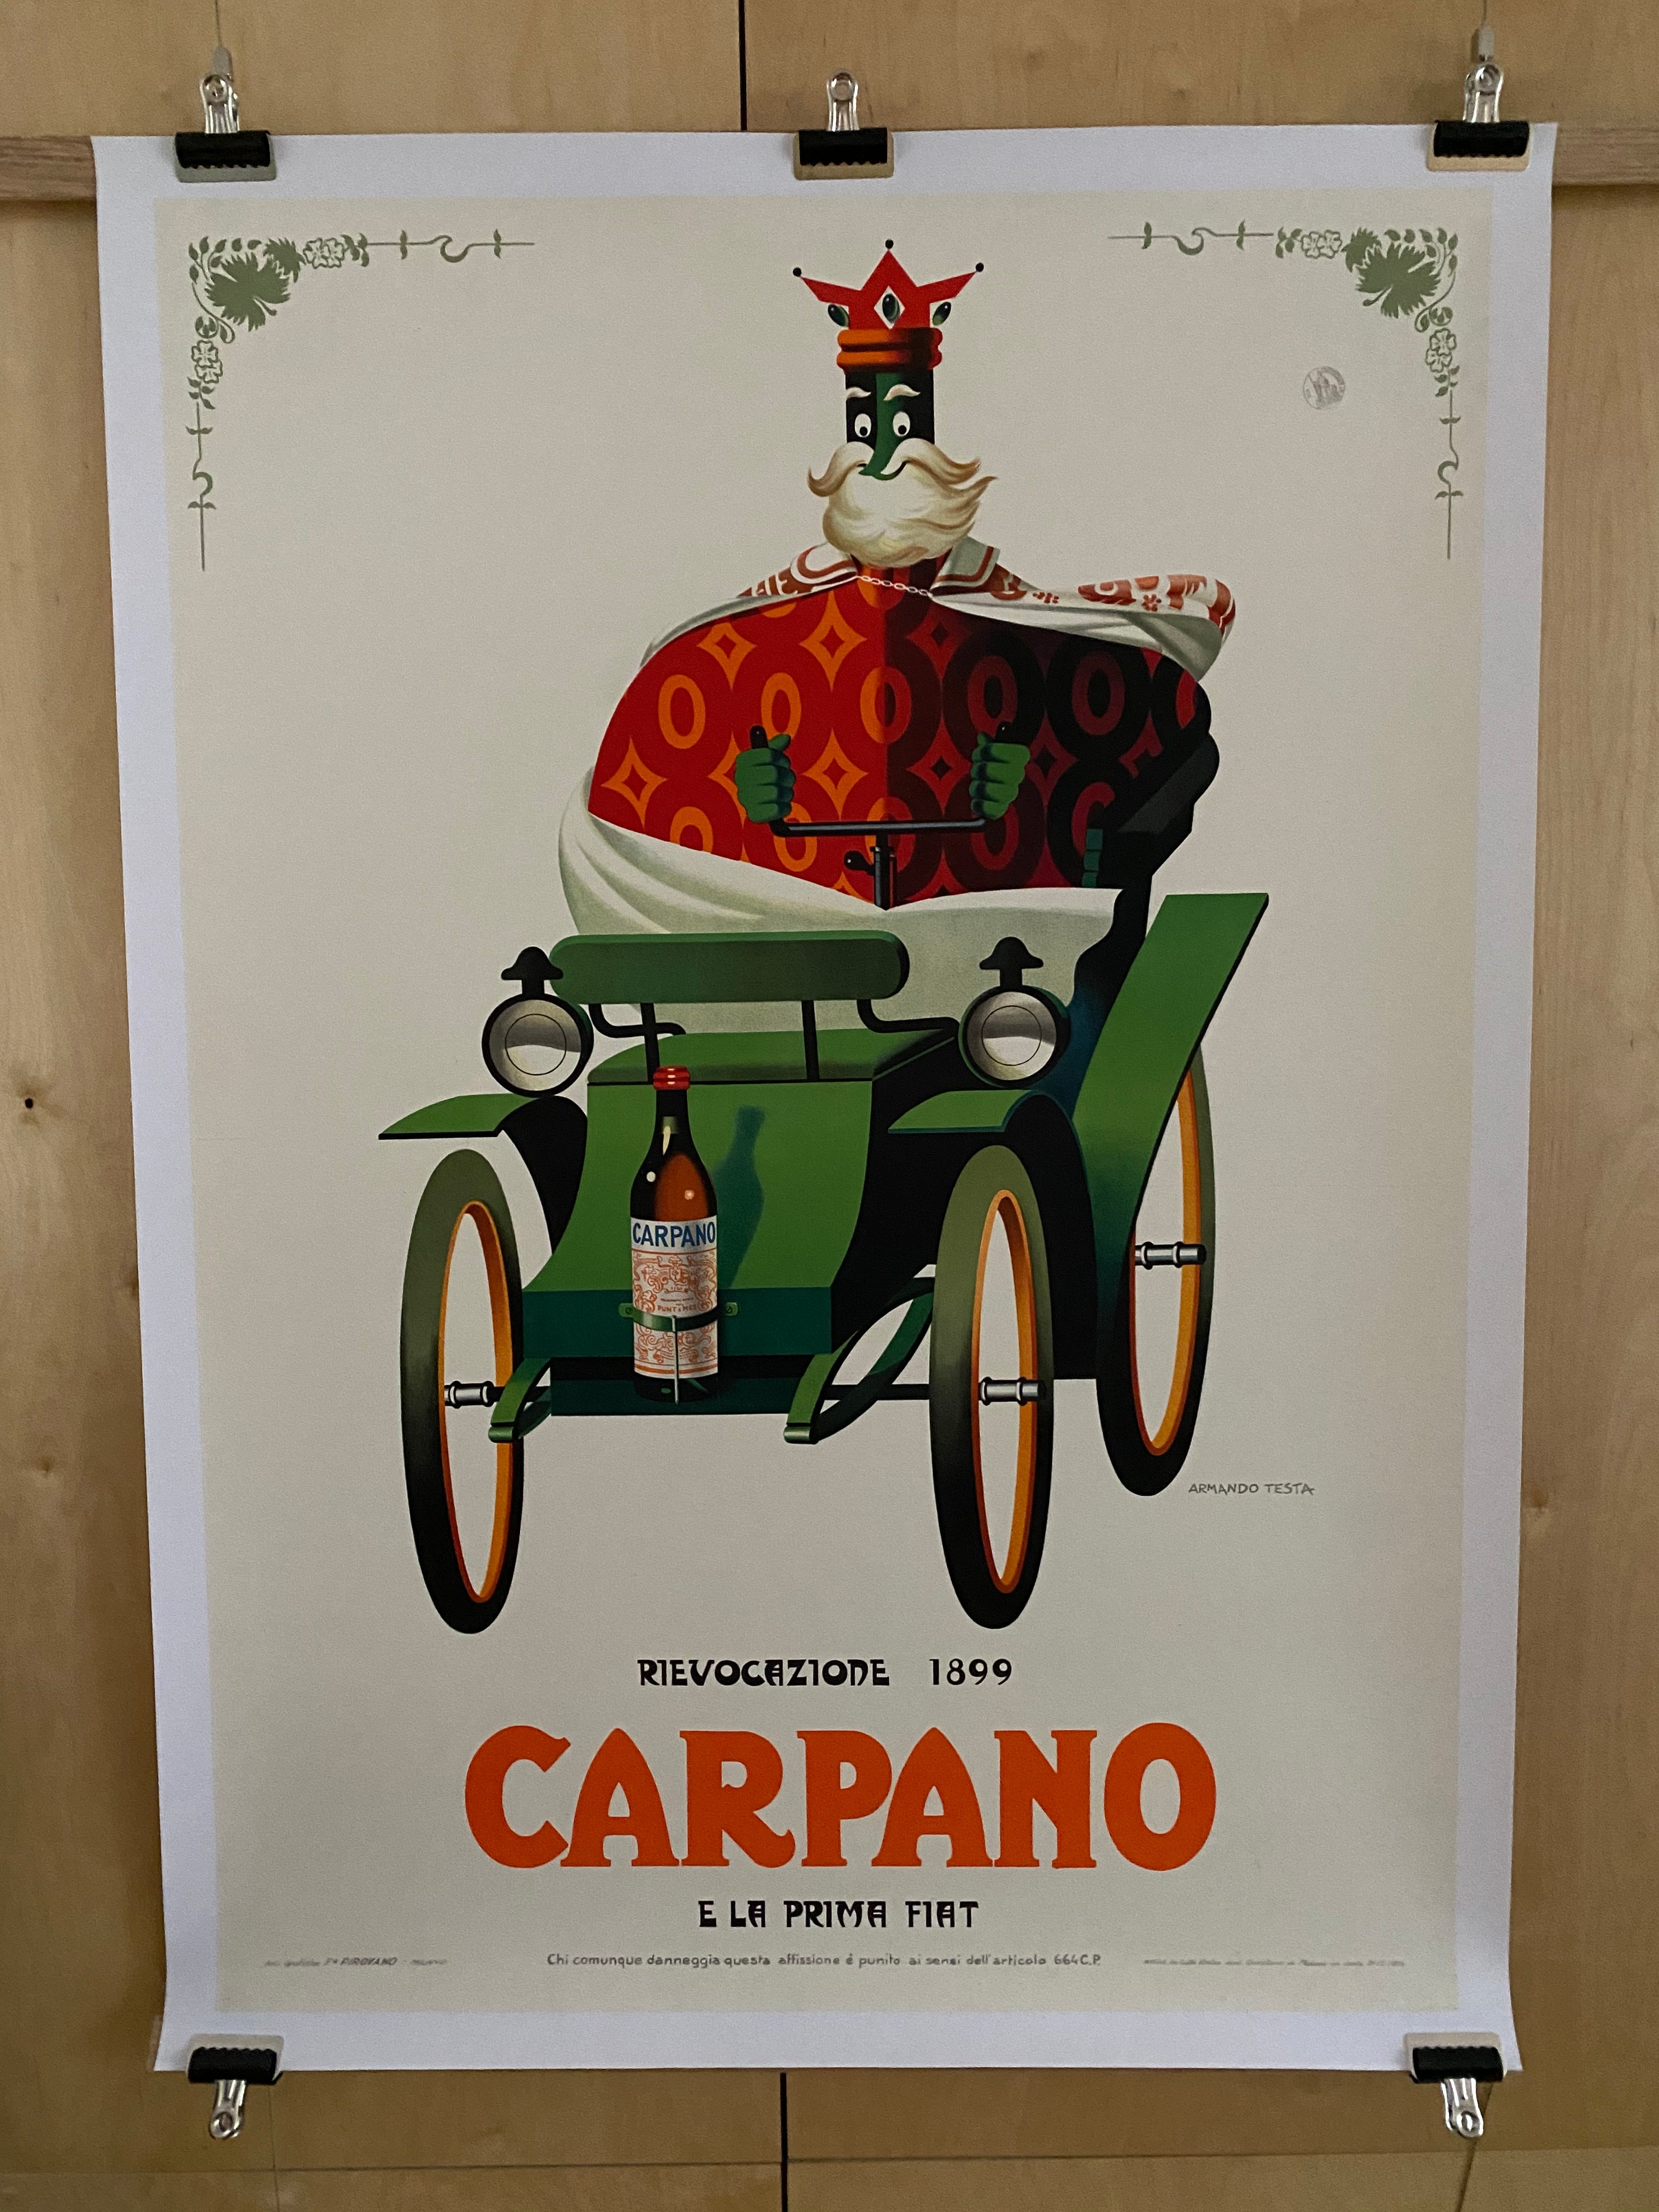 Carpano - Special Deilvery